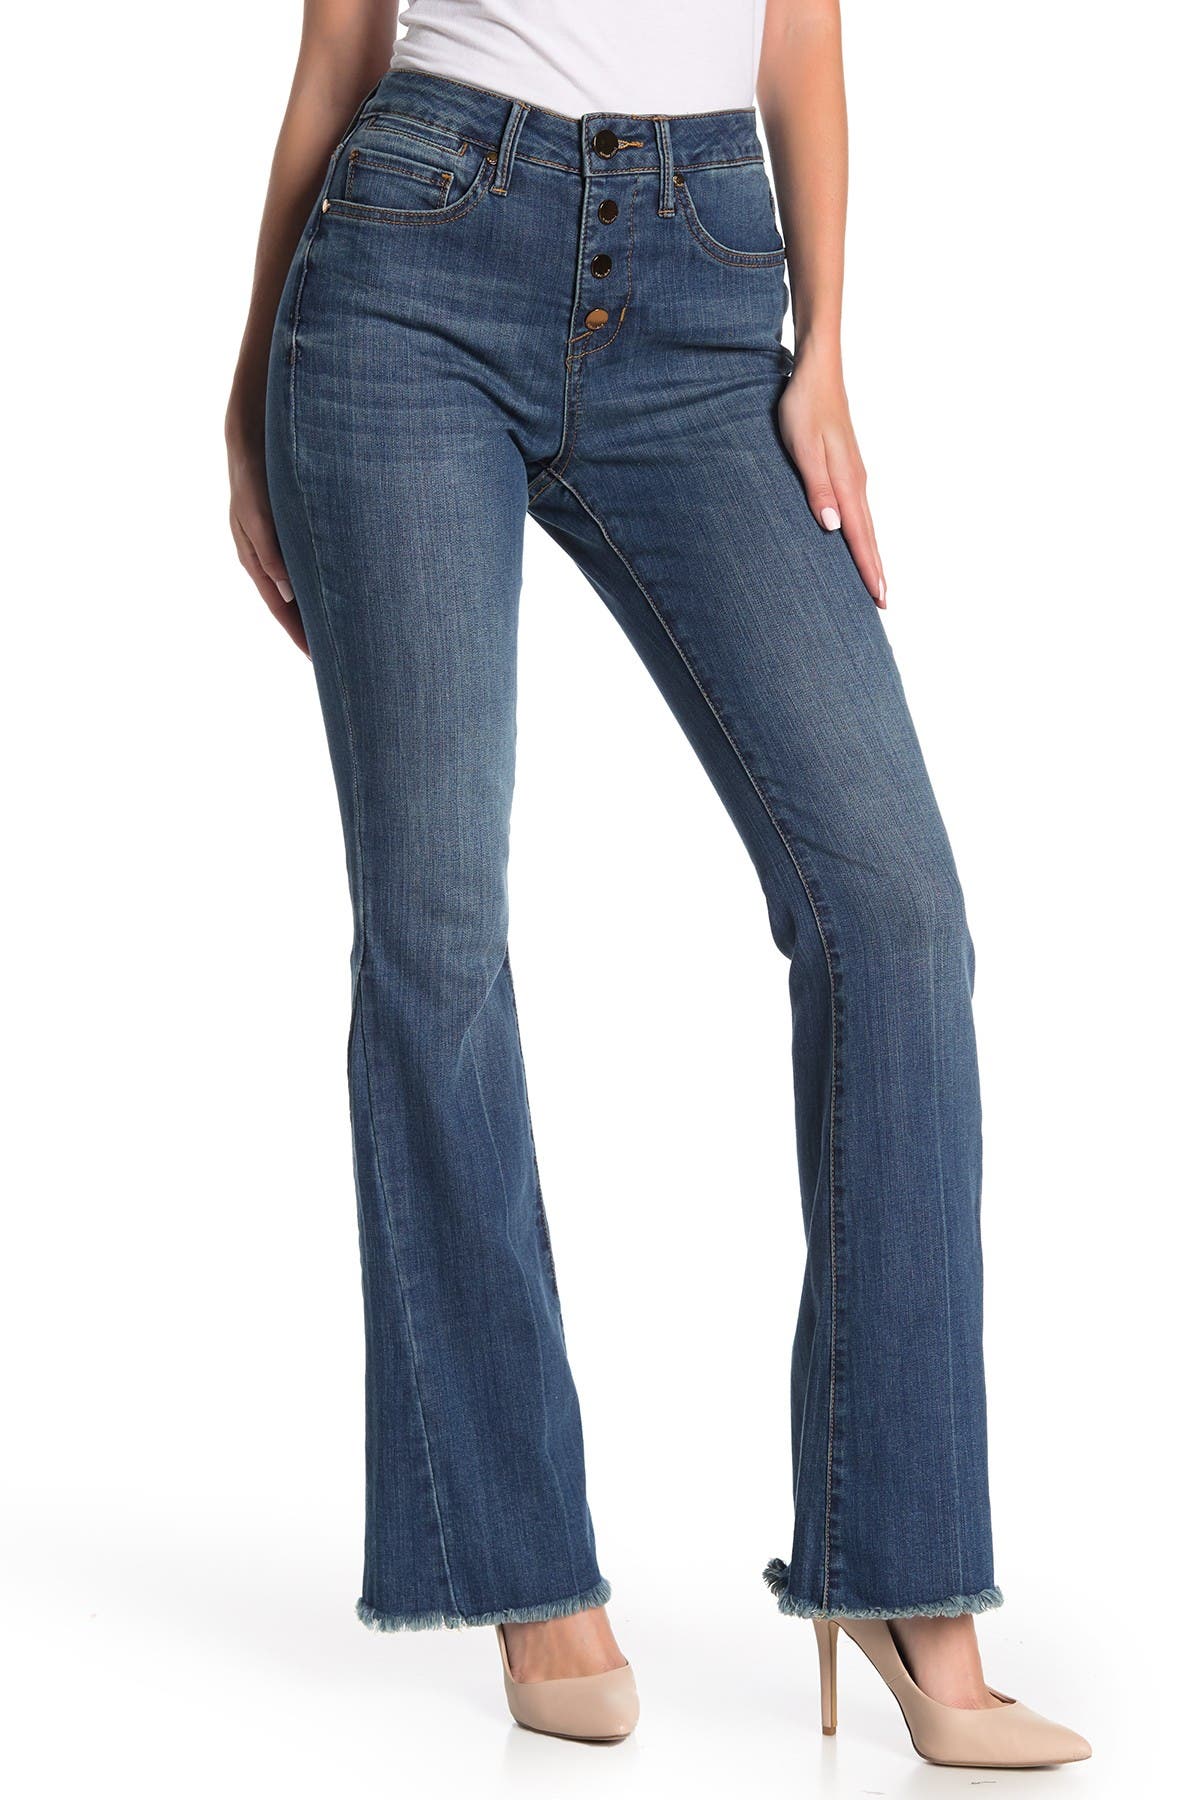 seven7 plus size wide leg jeans